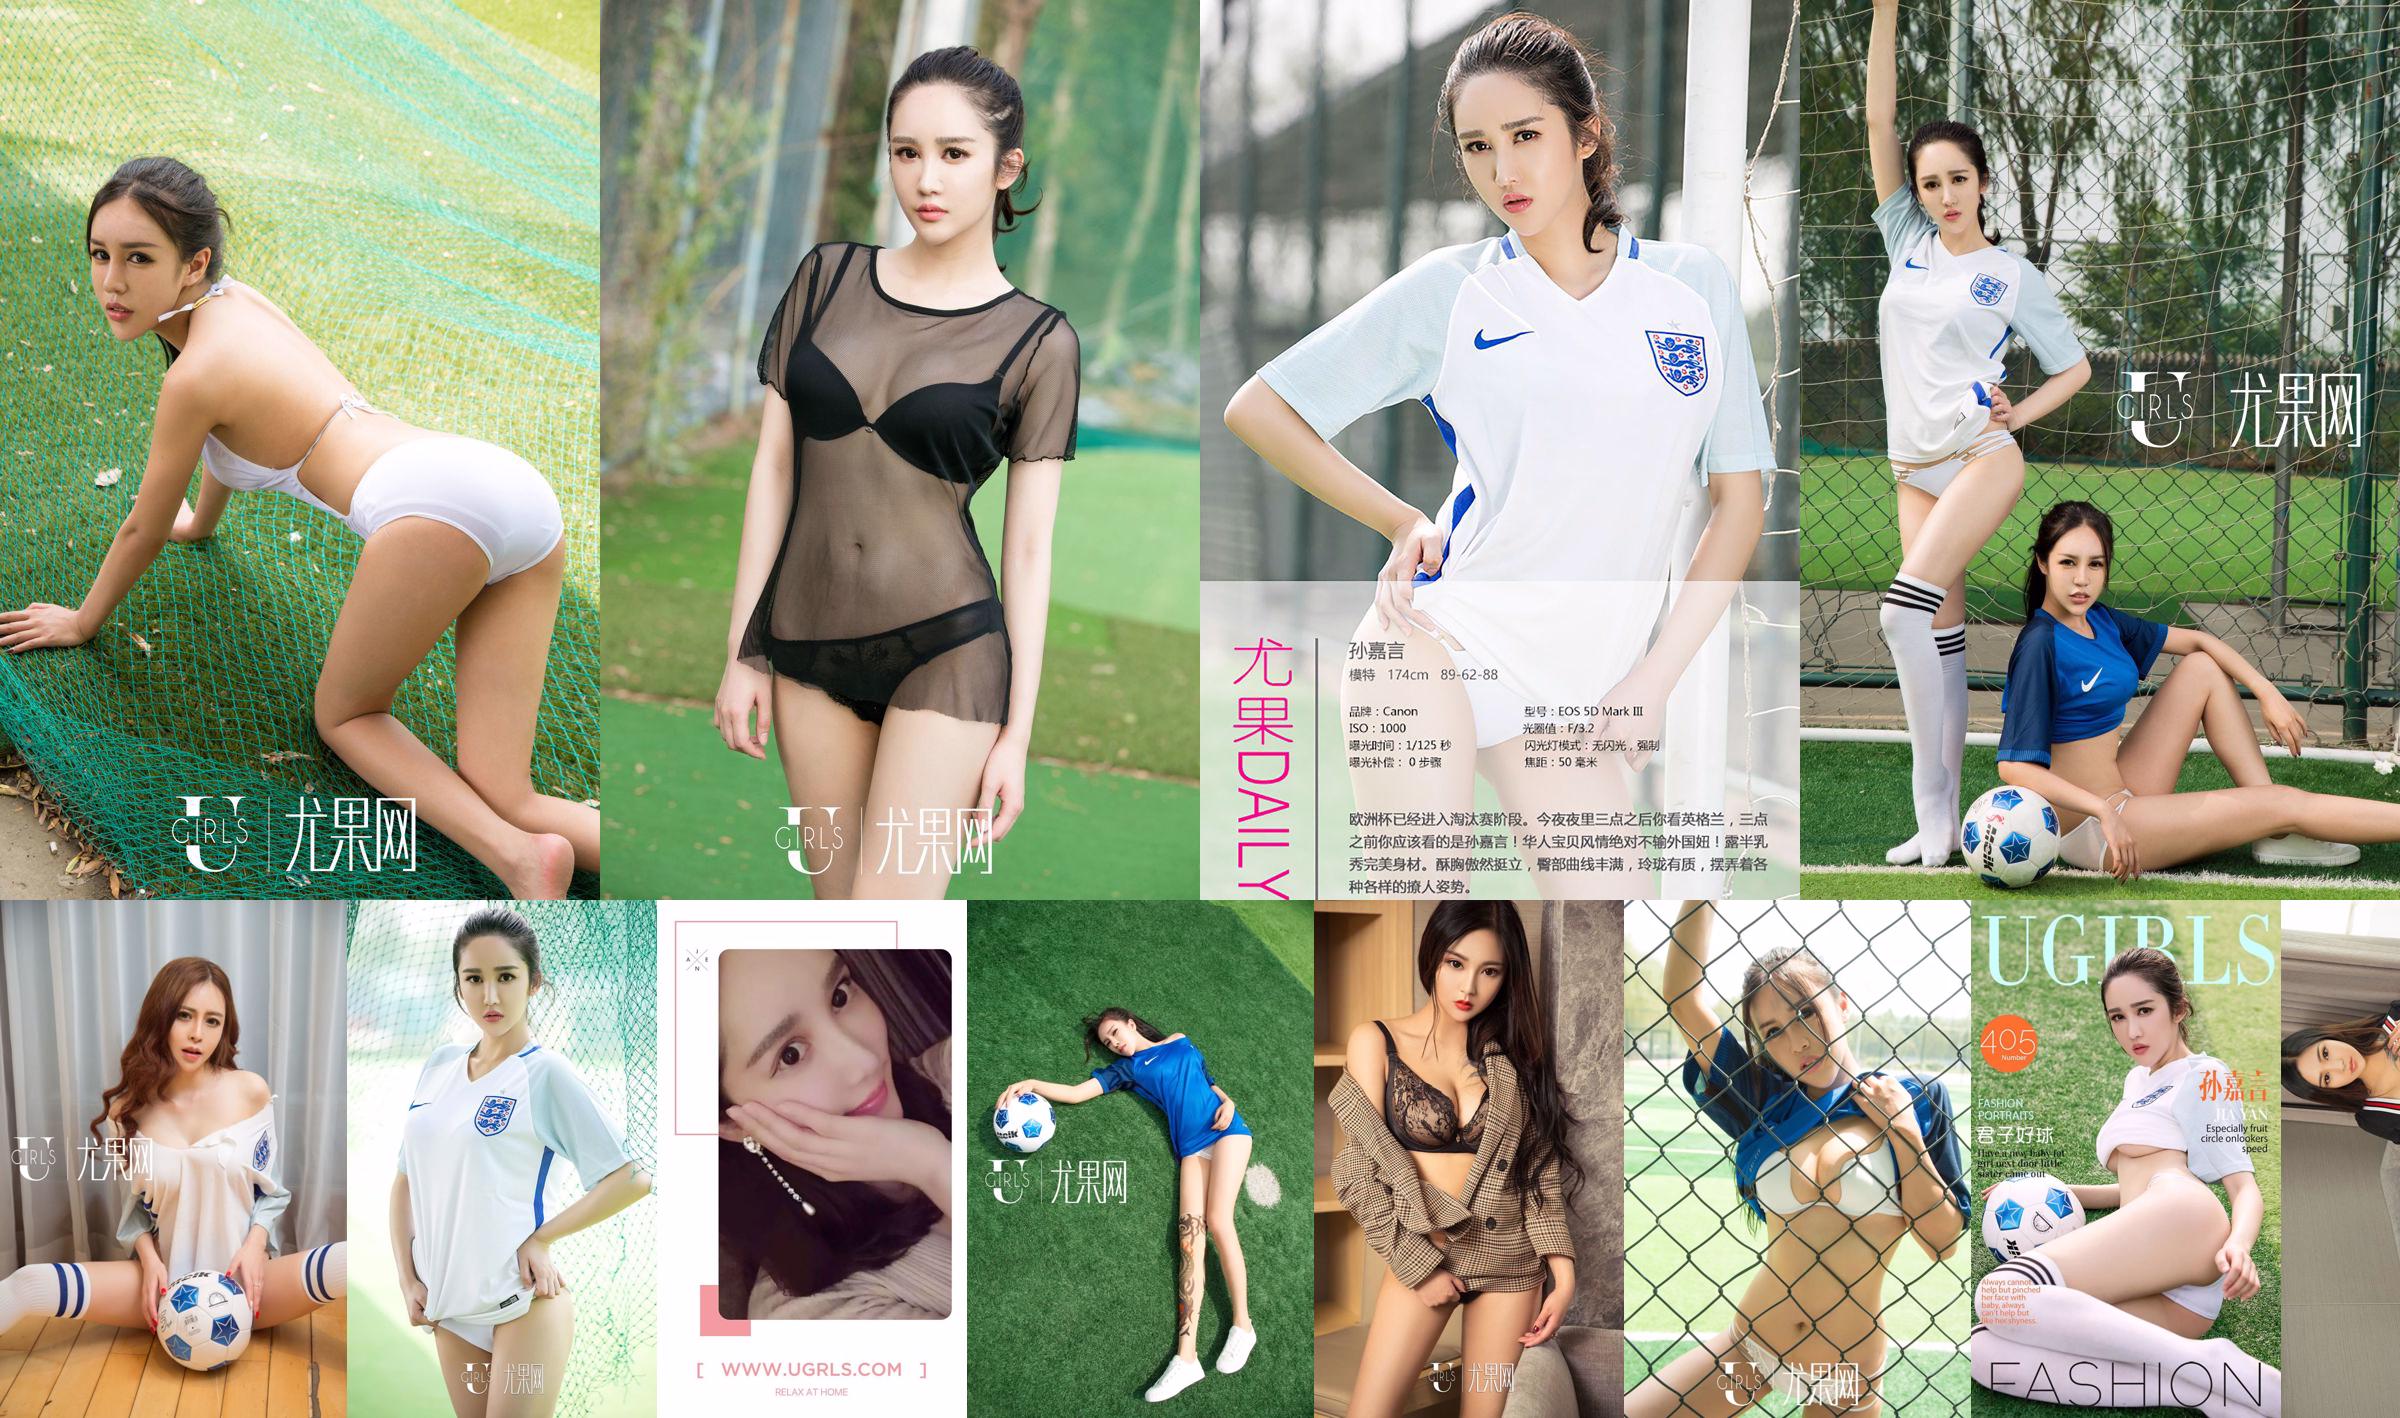 Sun Jiayan/Little Wisteria/Jin Xin/Li Yaying/Chun Jiao "Football Baby" [Ugirls] T019 No.6df0c6 Page 3